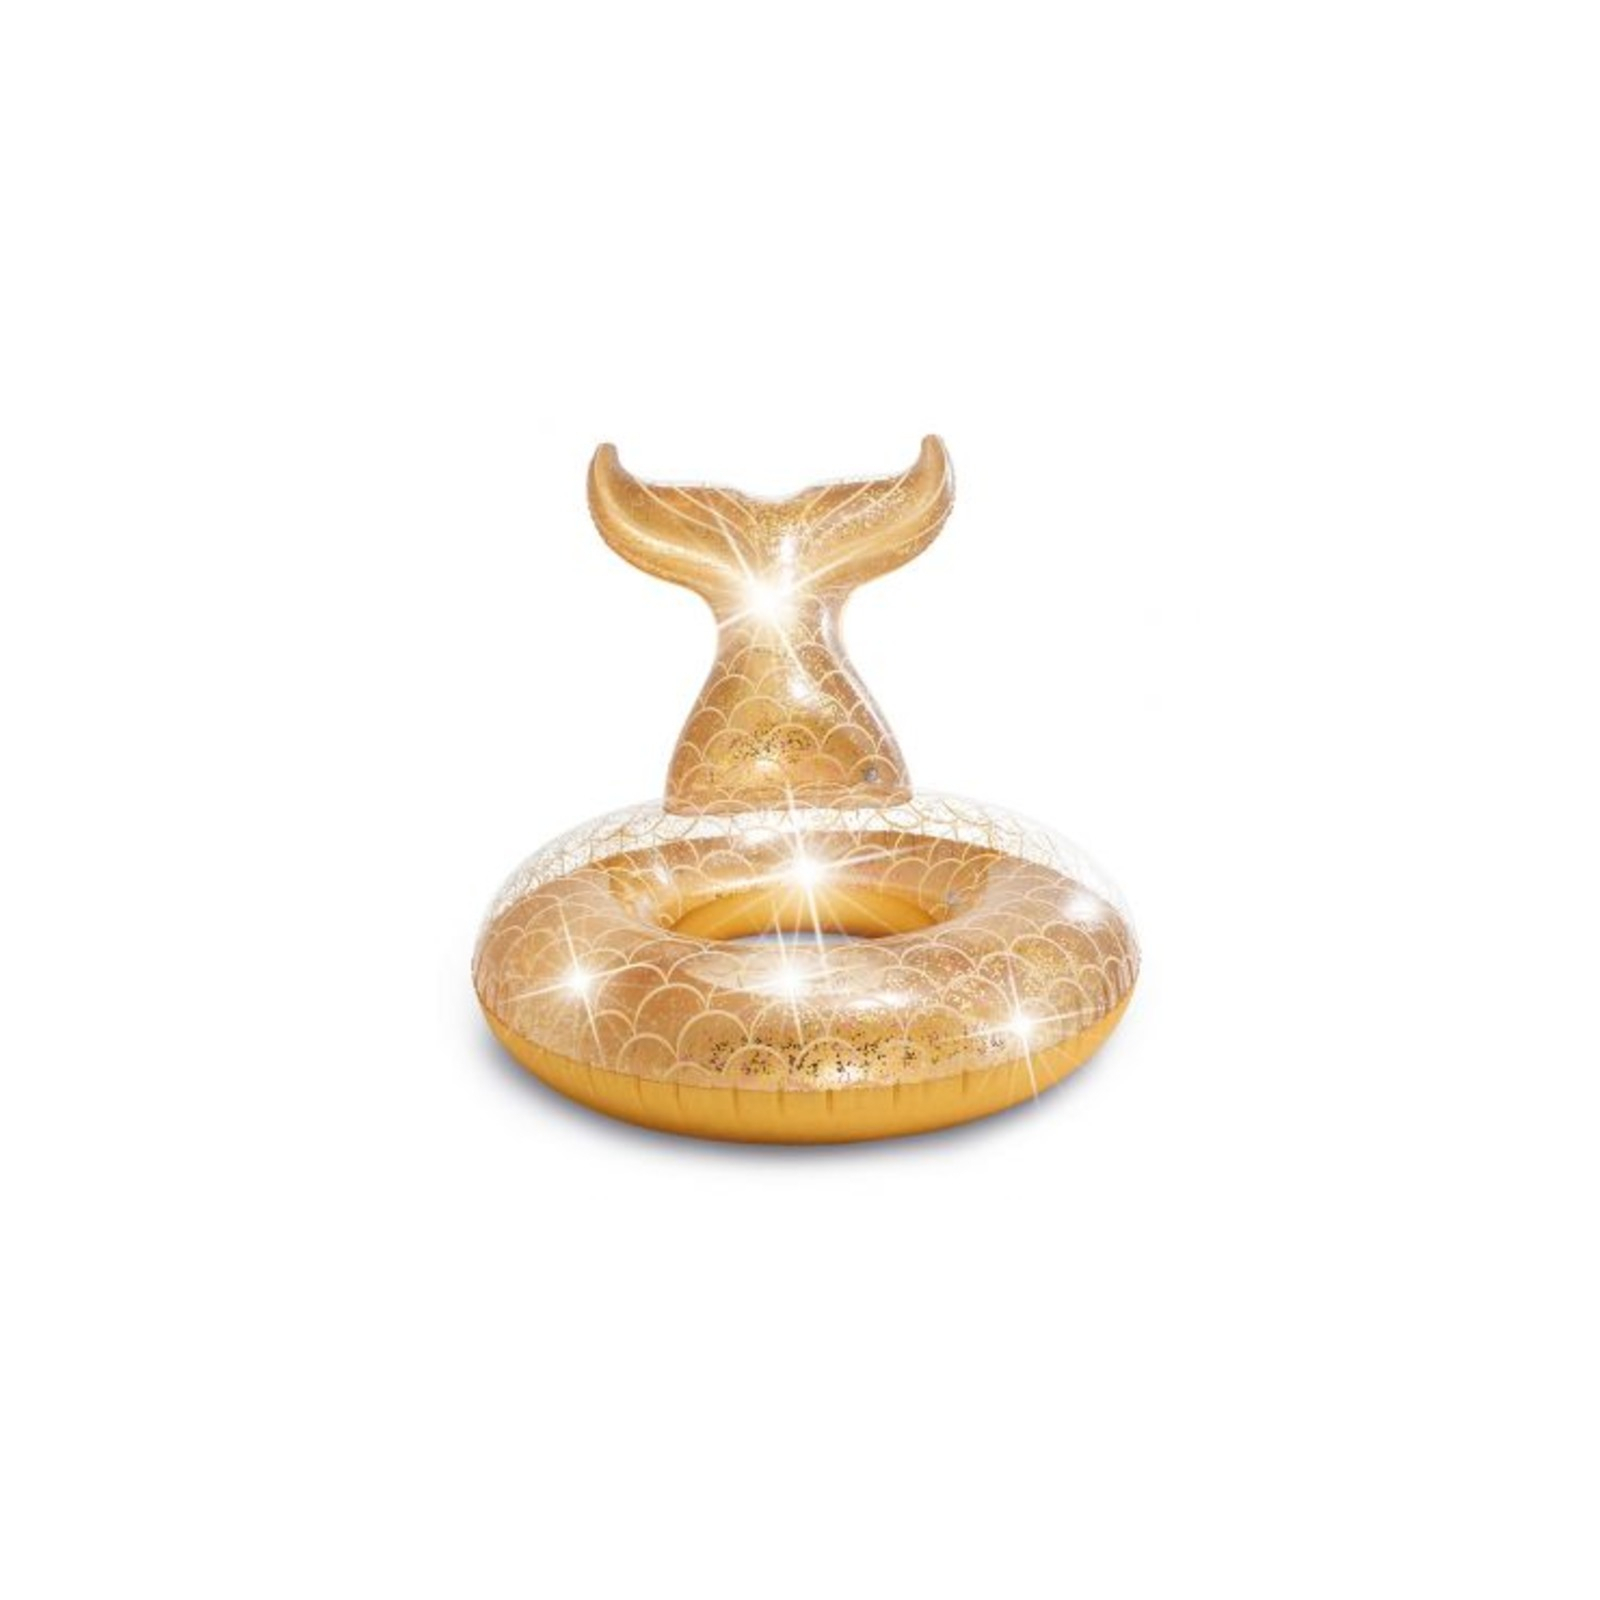 Круг надувной Intex Русалка золотистая (Intex 56258)